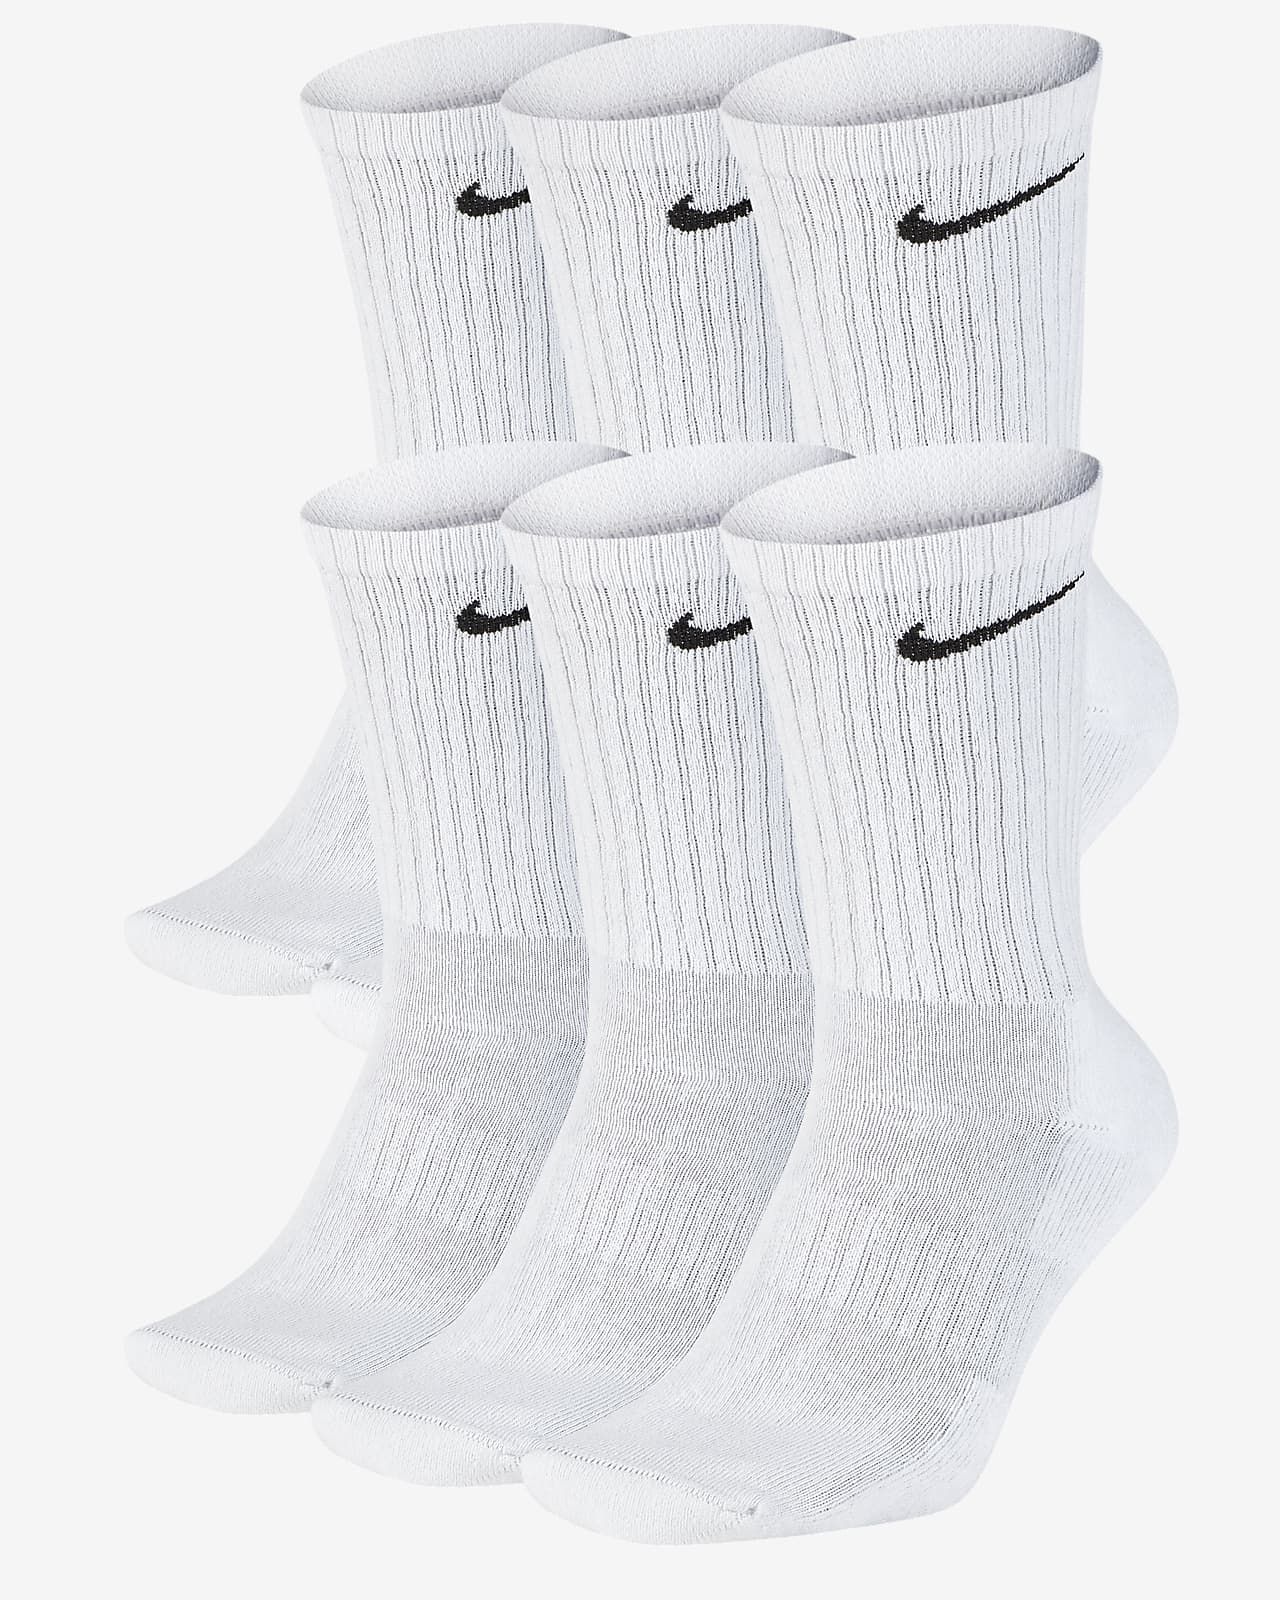 Nike Everyday Cushioned Training Crew Socks (6 Pairs). Nike.com | Nike (US)